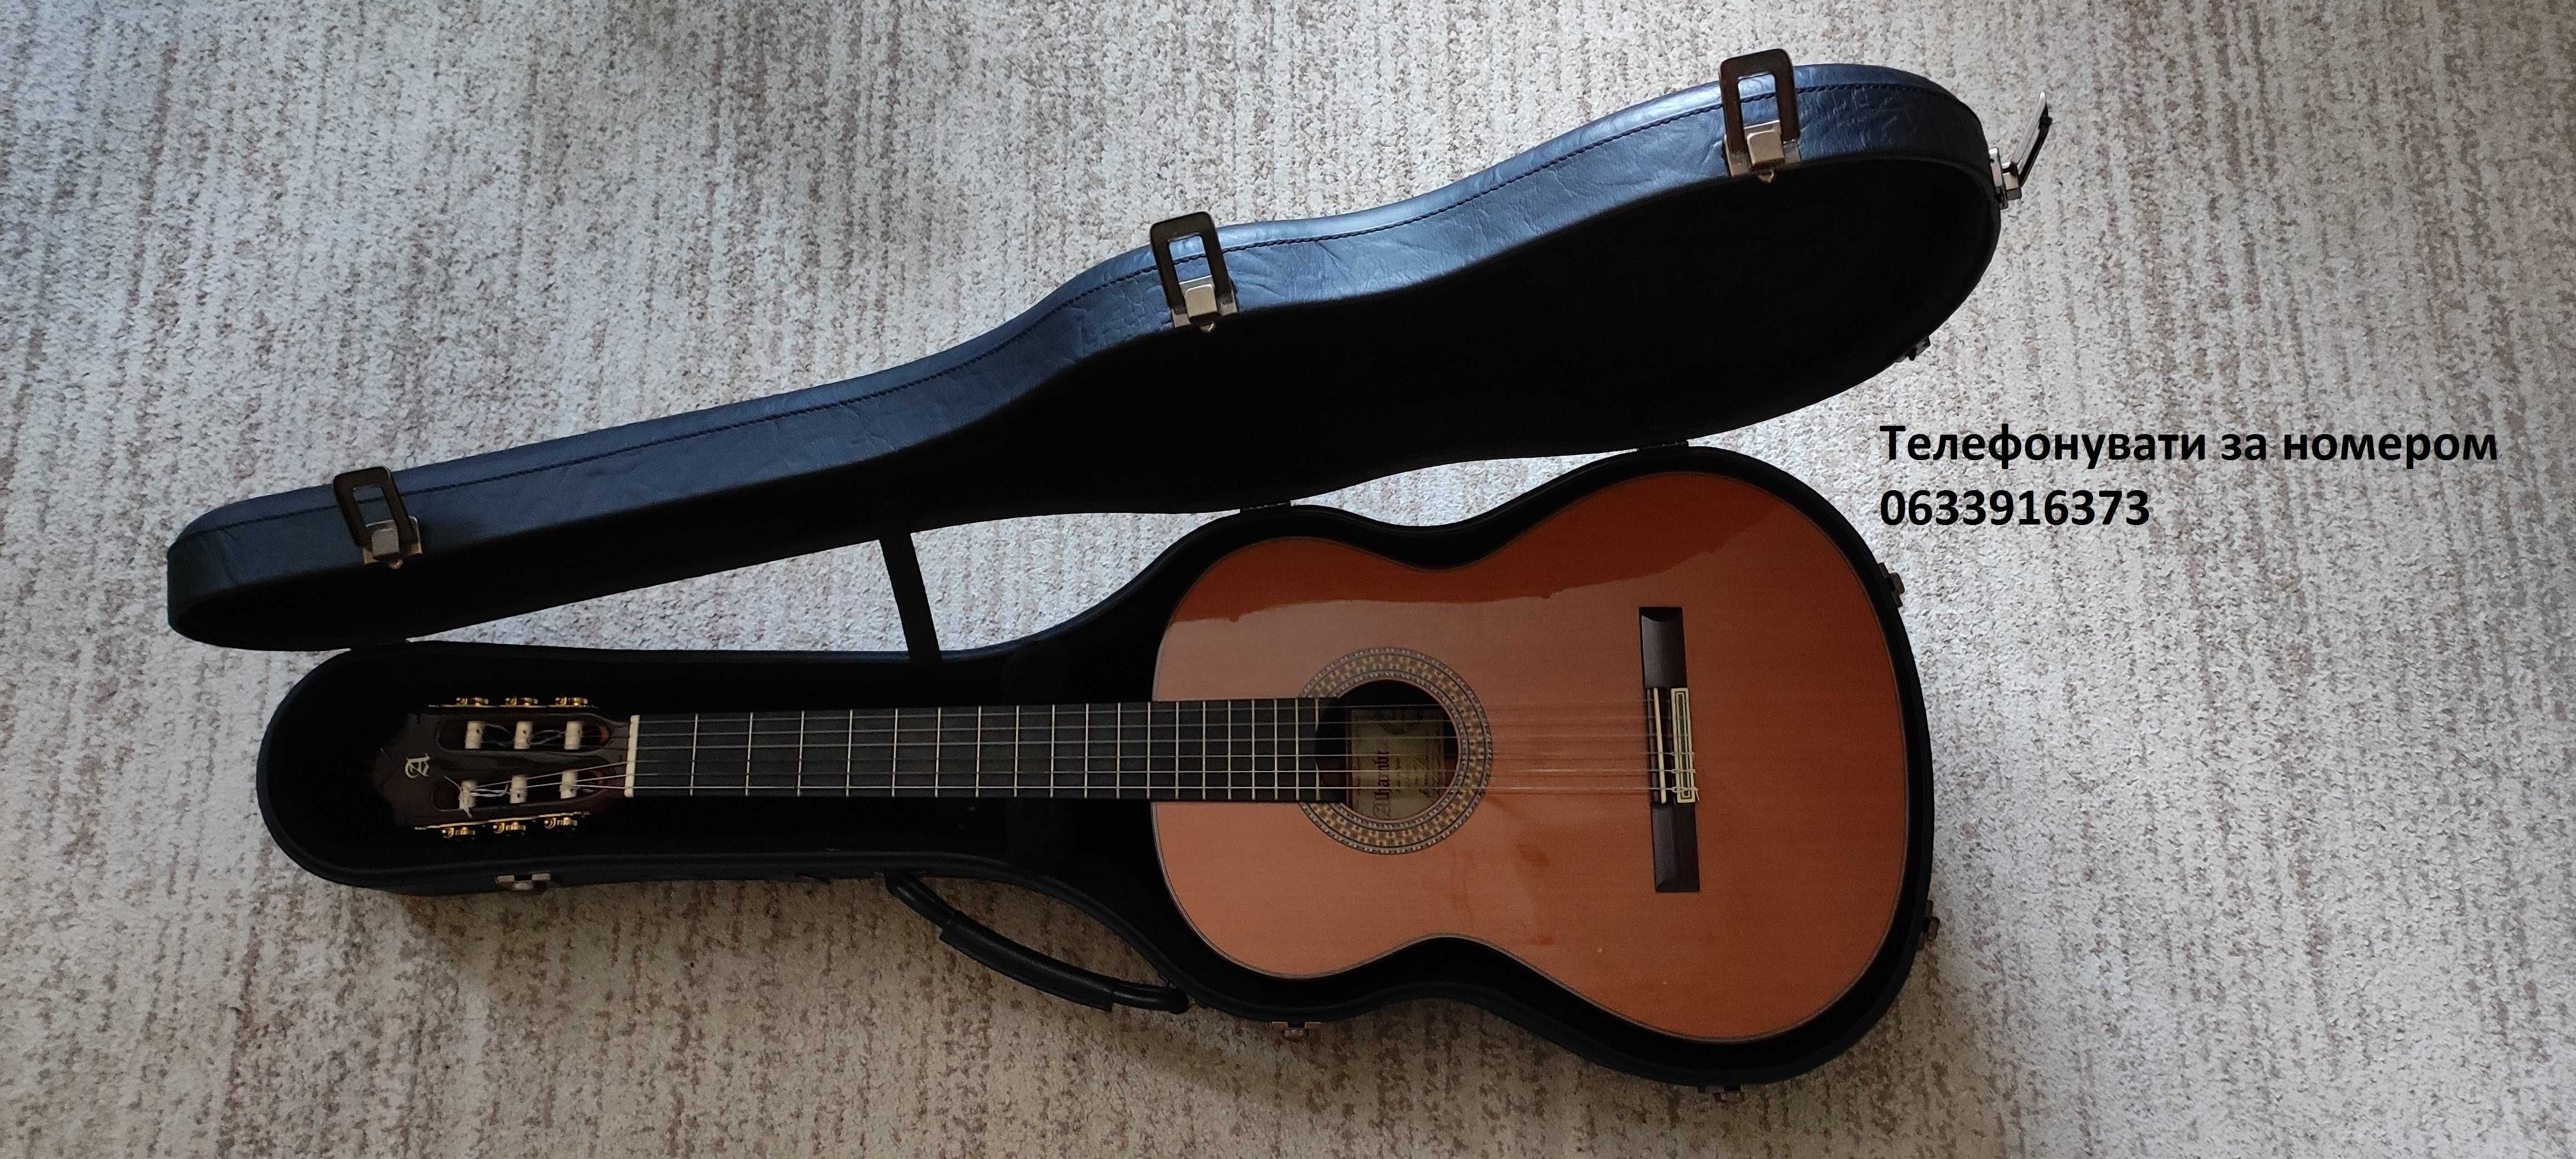 Продам НОВИЙ кейс марки Alhambra для гітари КУПЛЕНИЙ В ІСПАНІЇ